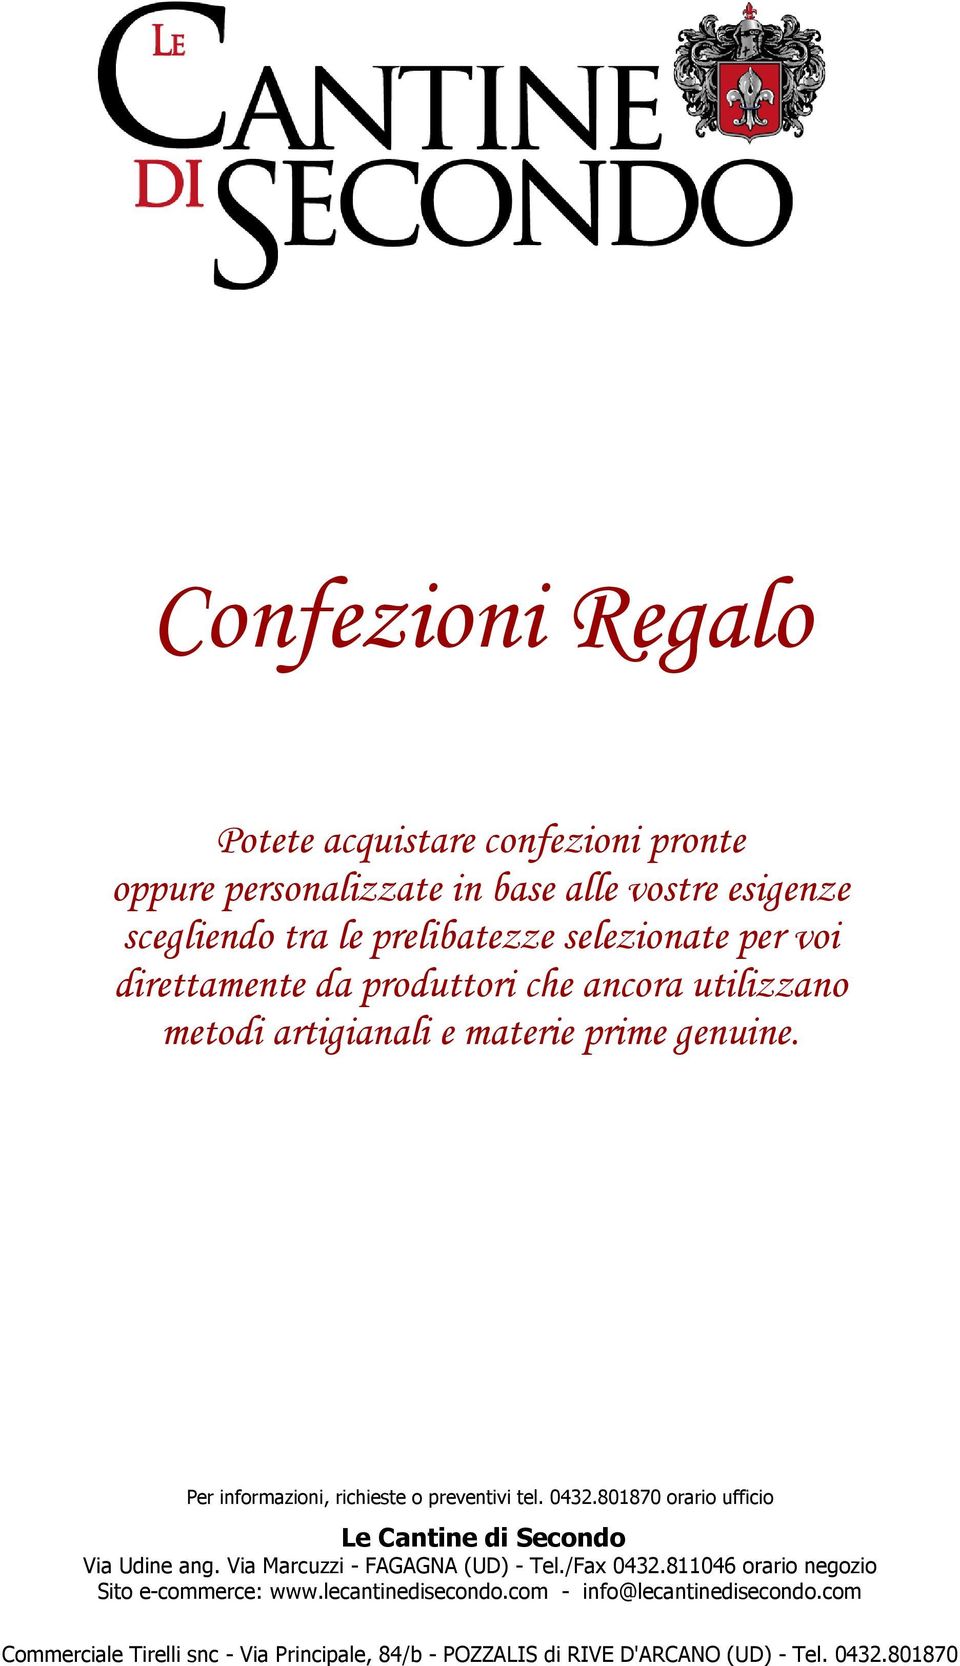 0432.801870 orario ufficio Le Cantine di Secondo Via Udine ang. Via Marcuzzi - FAGAGNA (UD) - Tel./Fax 0432.